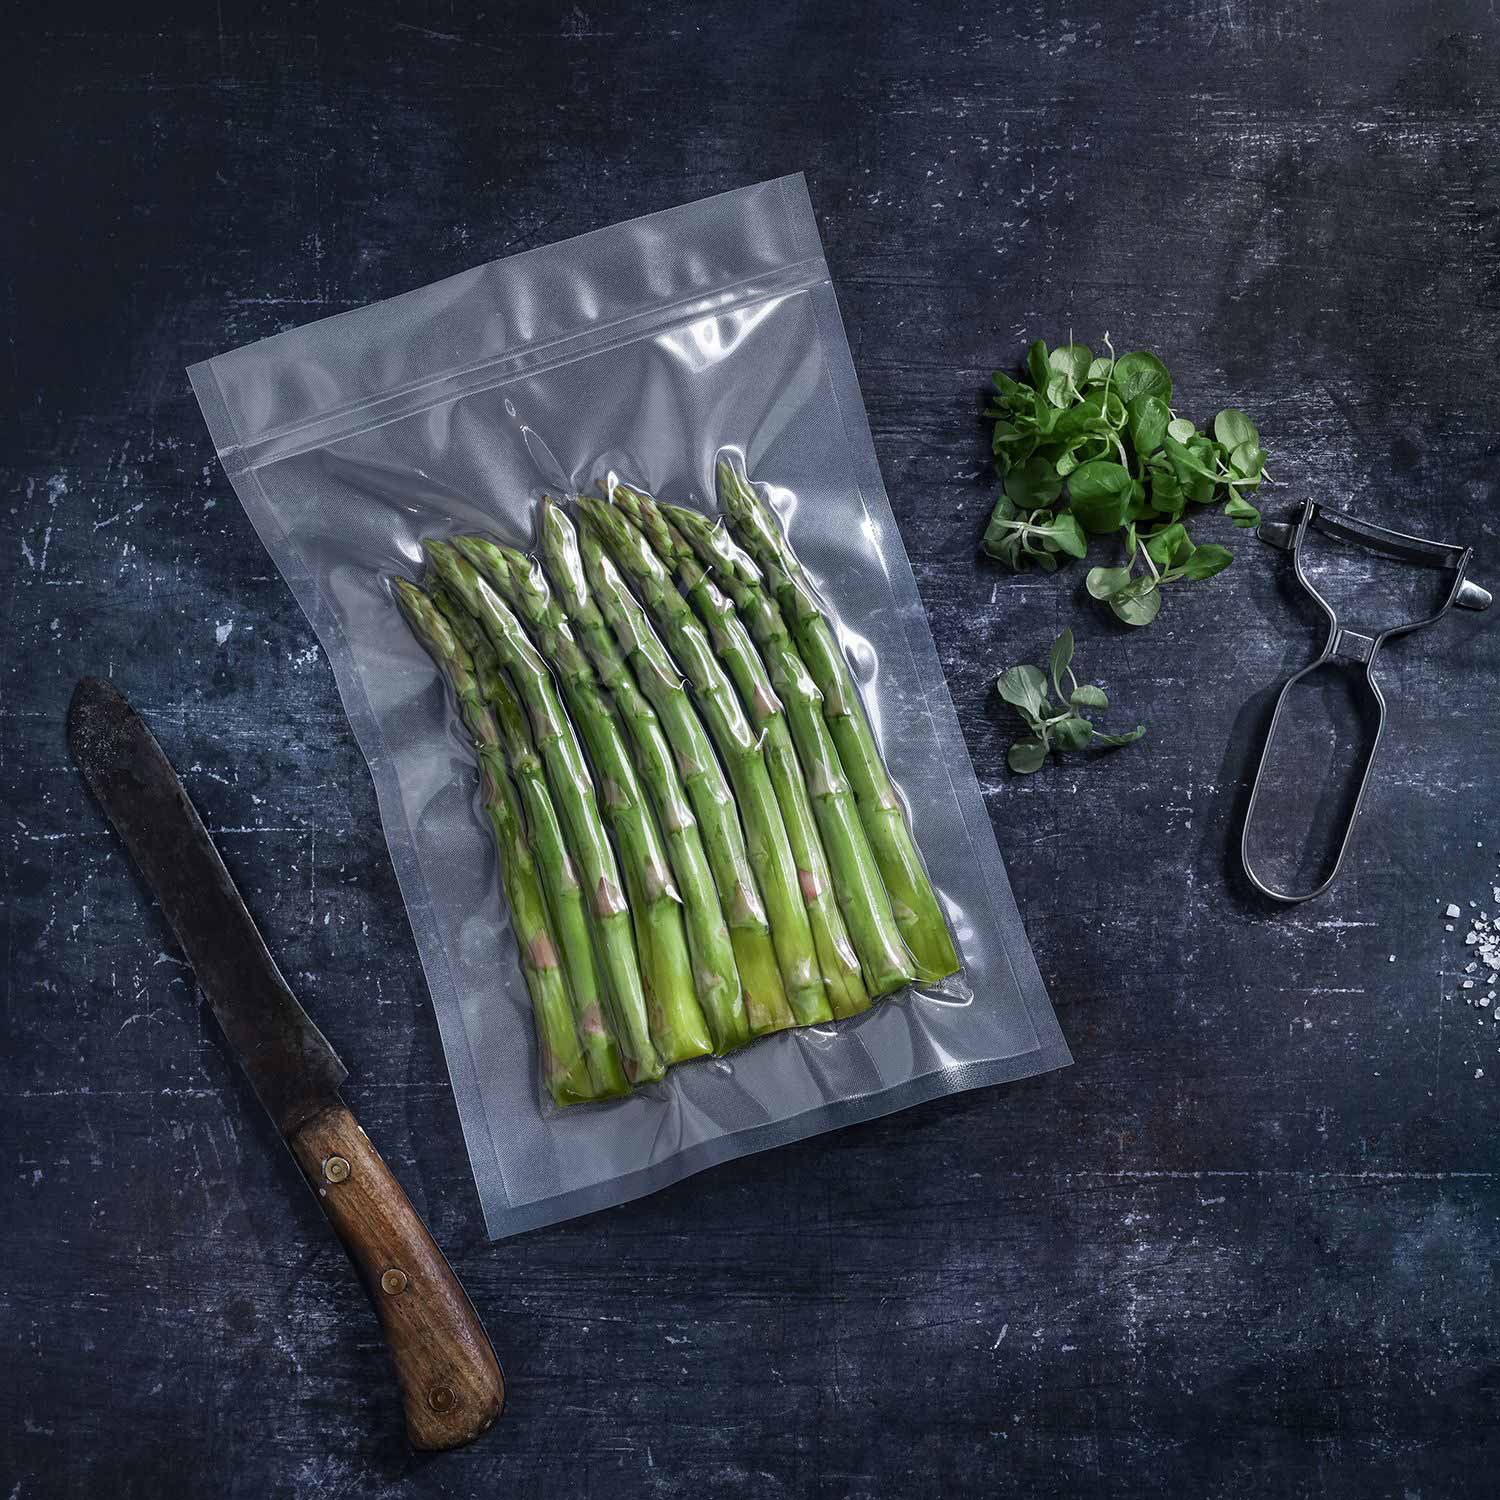 Transparent structured vacuum bag vacuum-sealed with asparagus